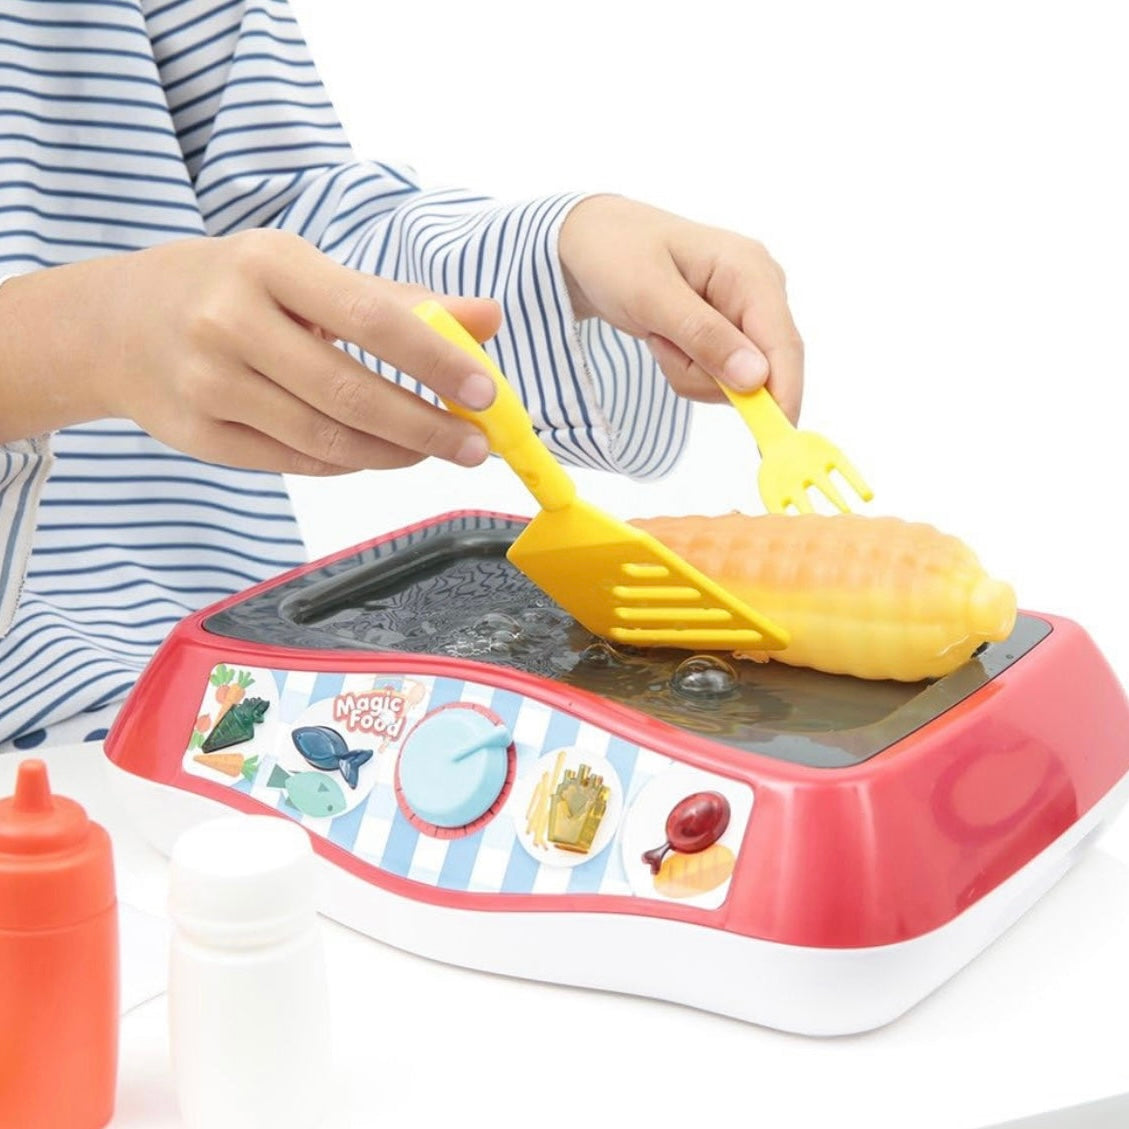 KochSimulator - Das Realistischste Koch Spielzeug